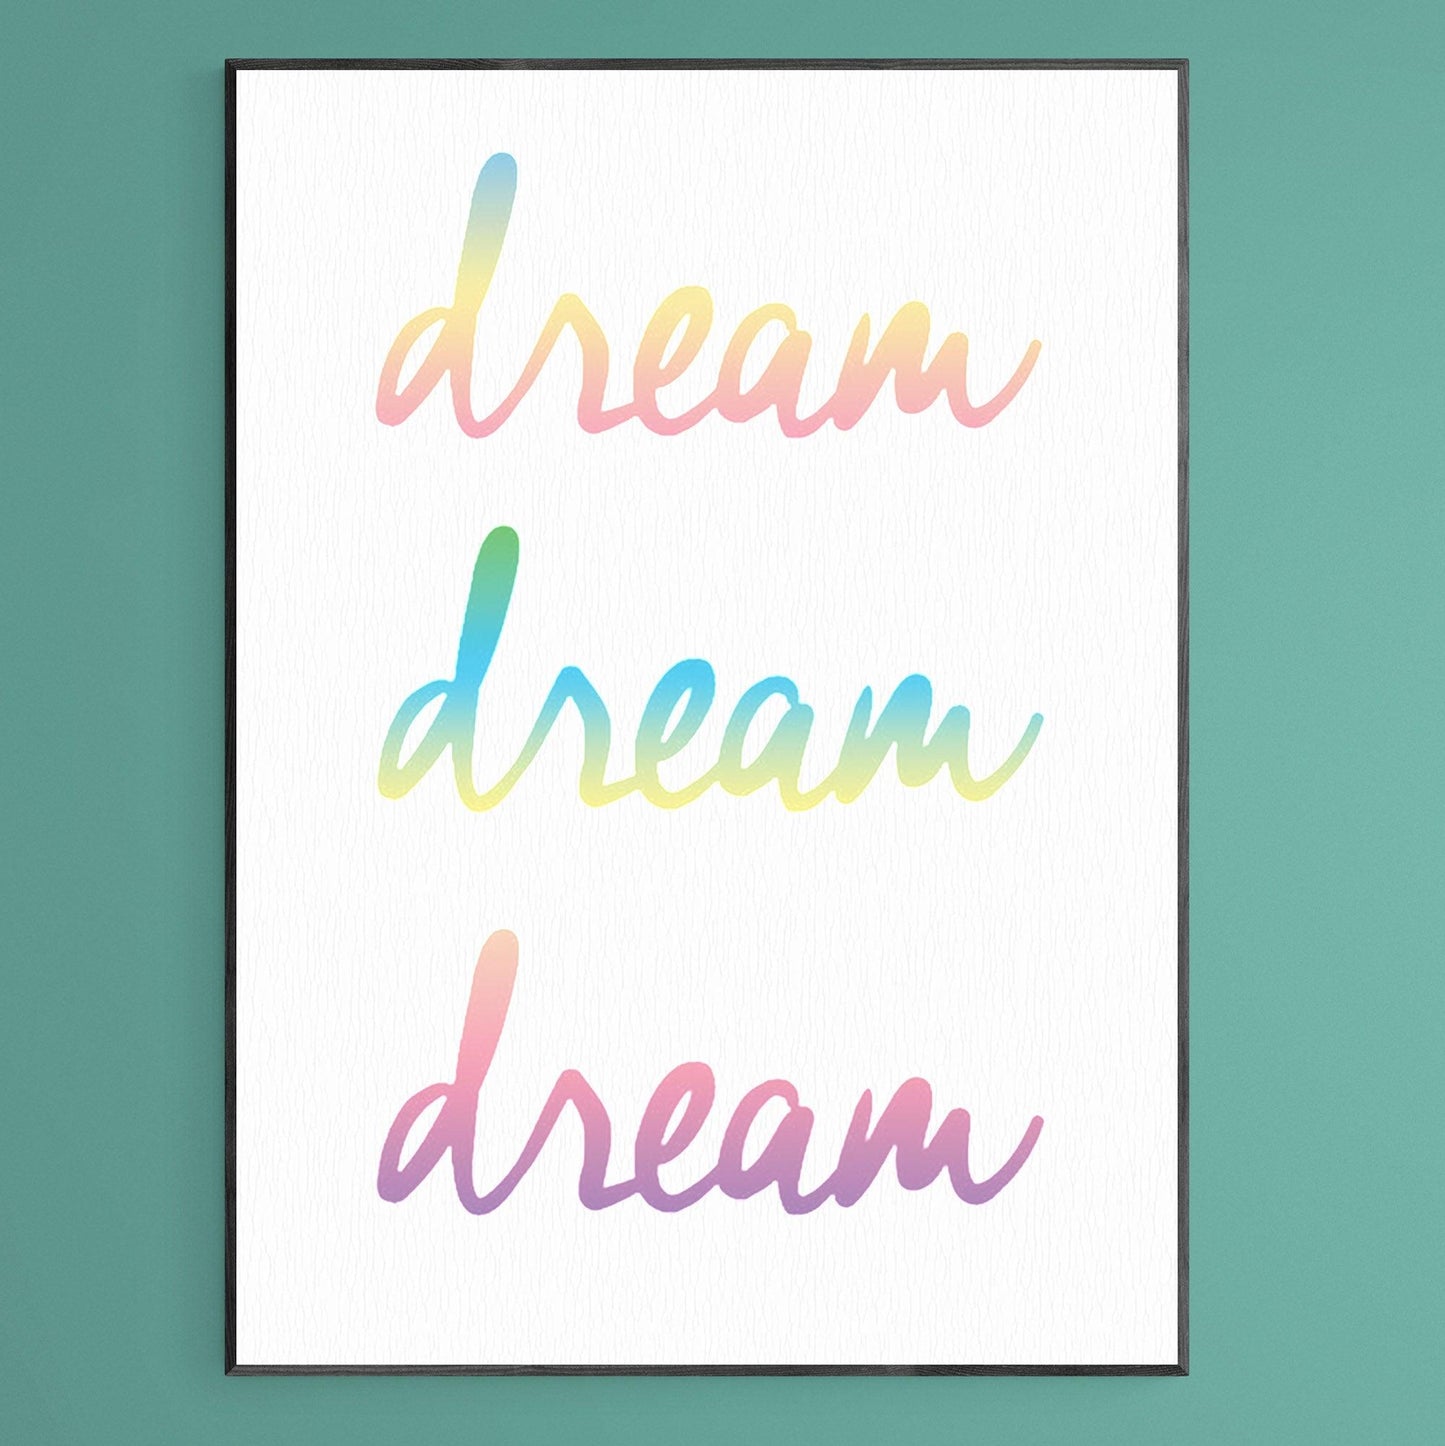 Dreams Dreams Dreams Typography Print - 98types